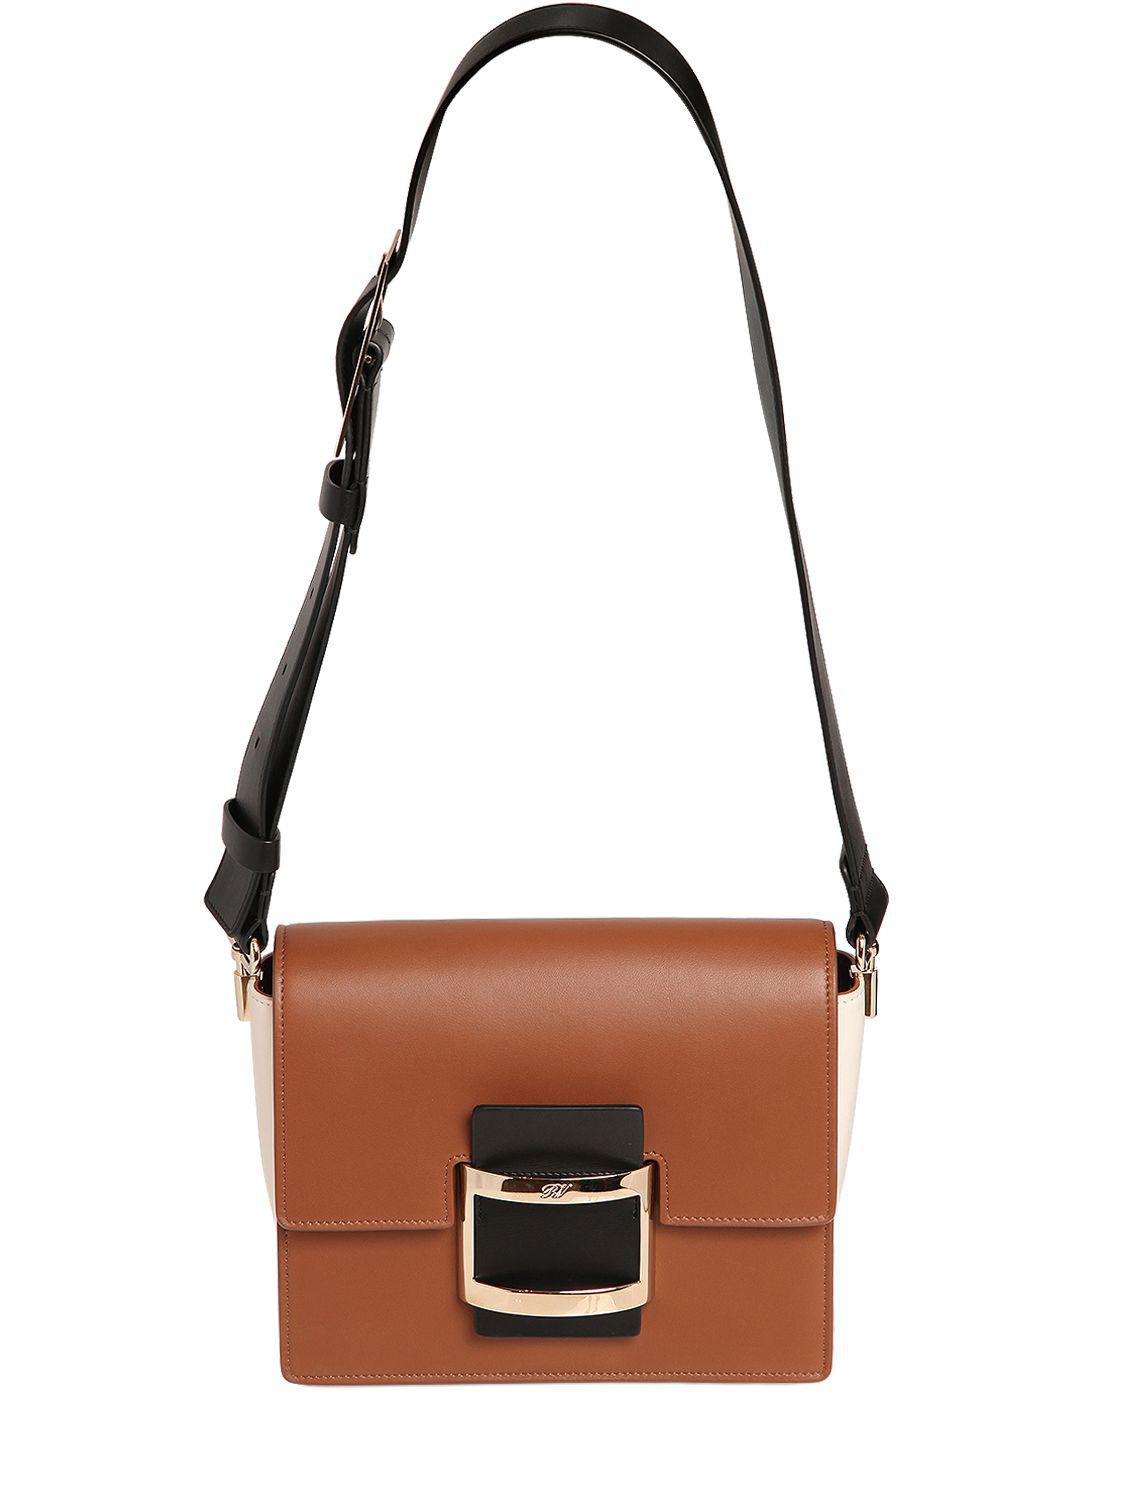 Lyst - Roger Vivier Mini Viv Leather Shoulder Bag in Brown